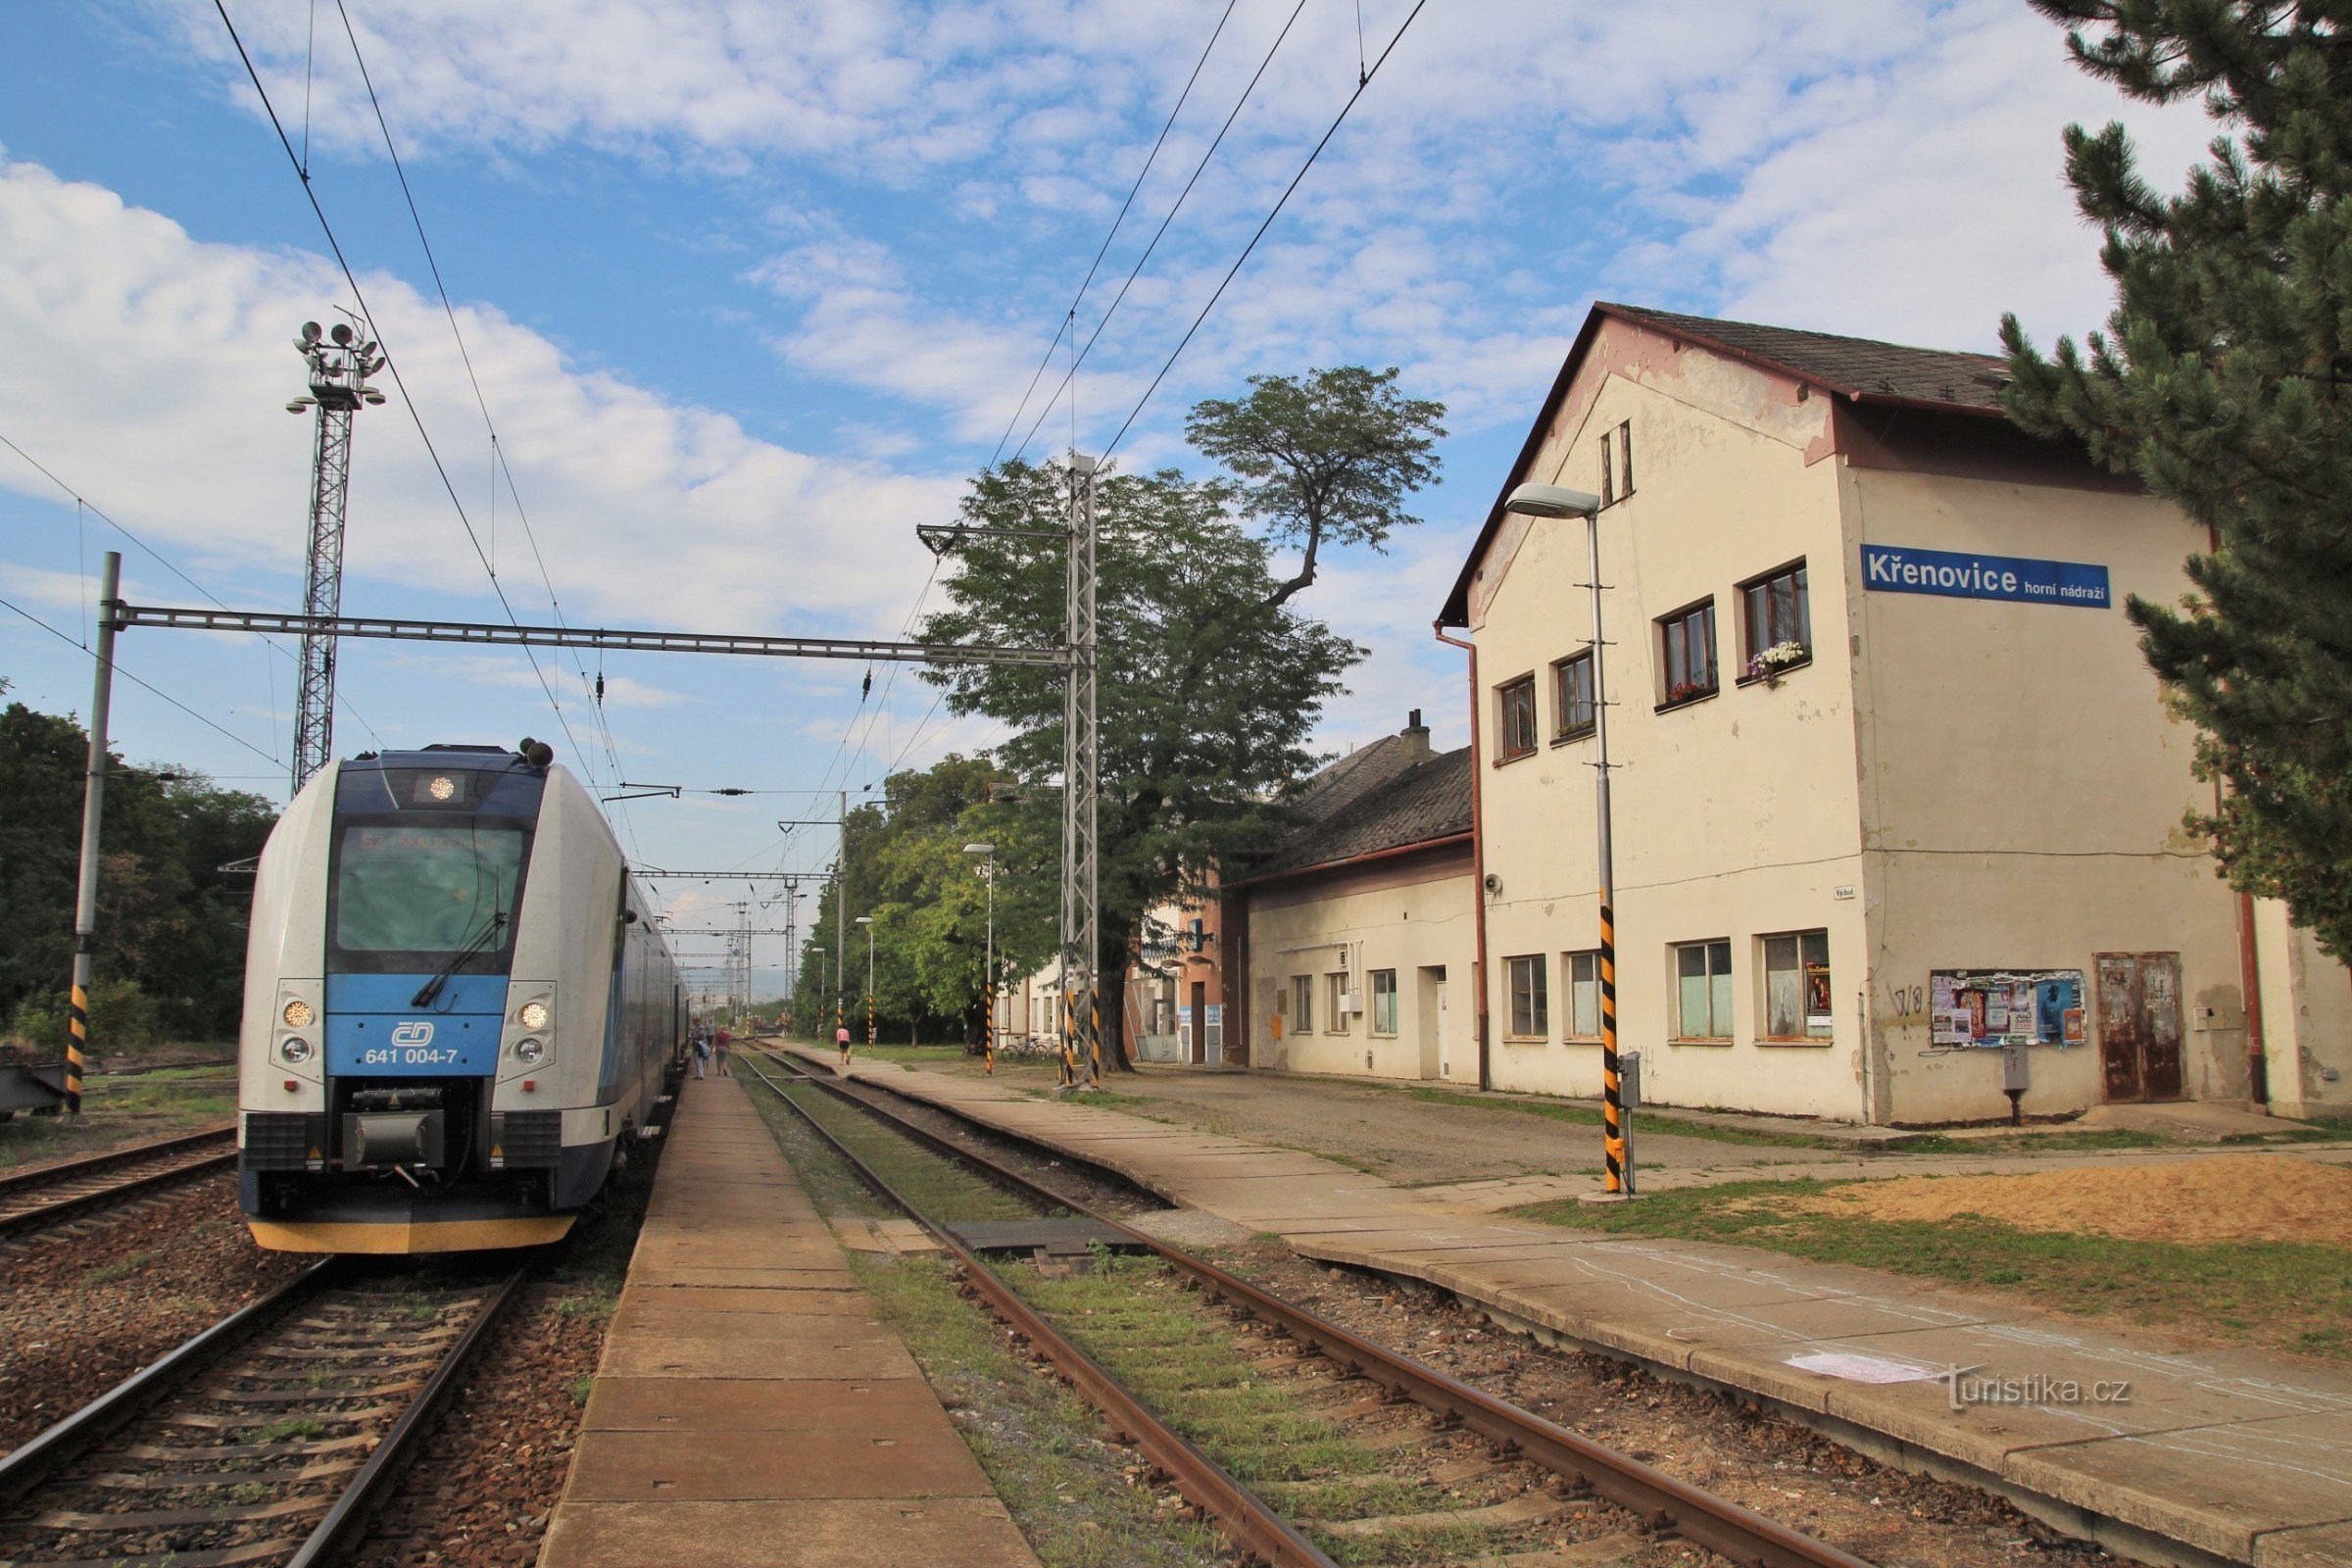 Křenovice, station supérieure